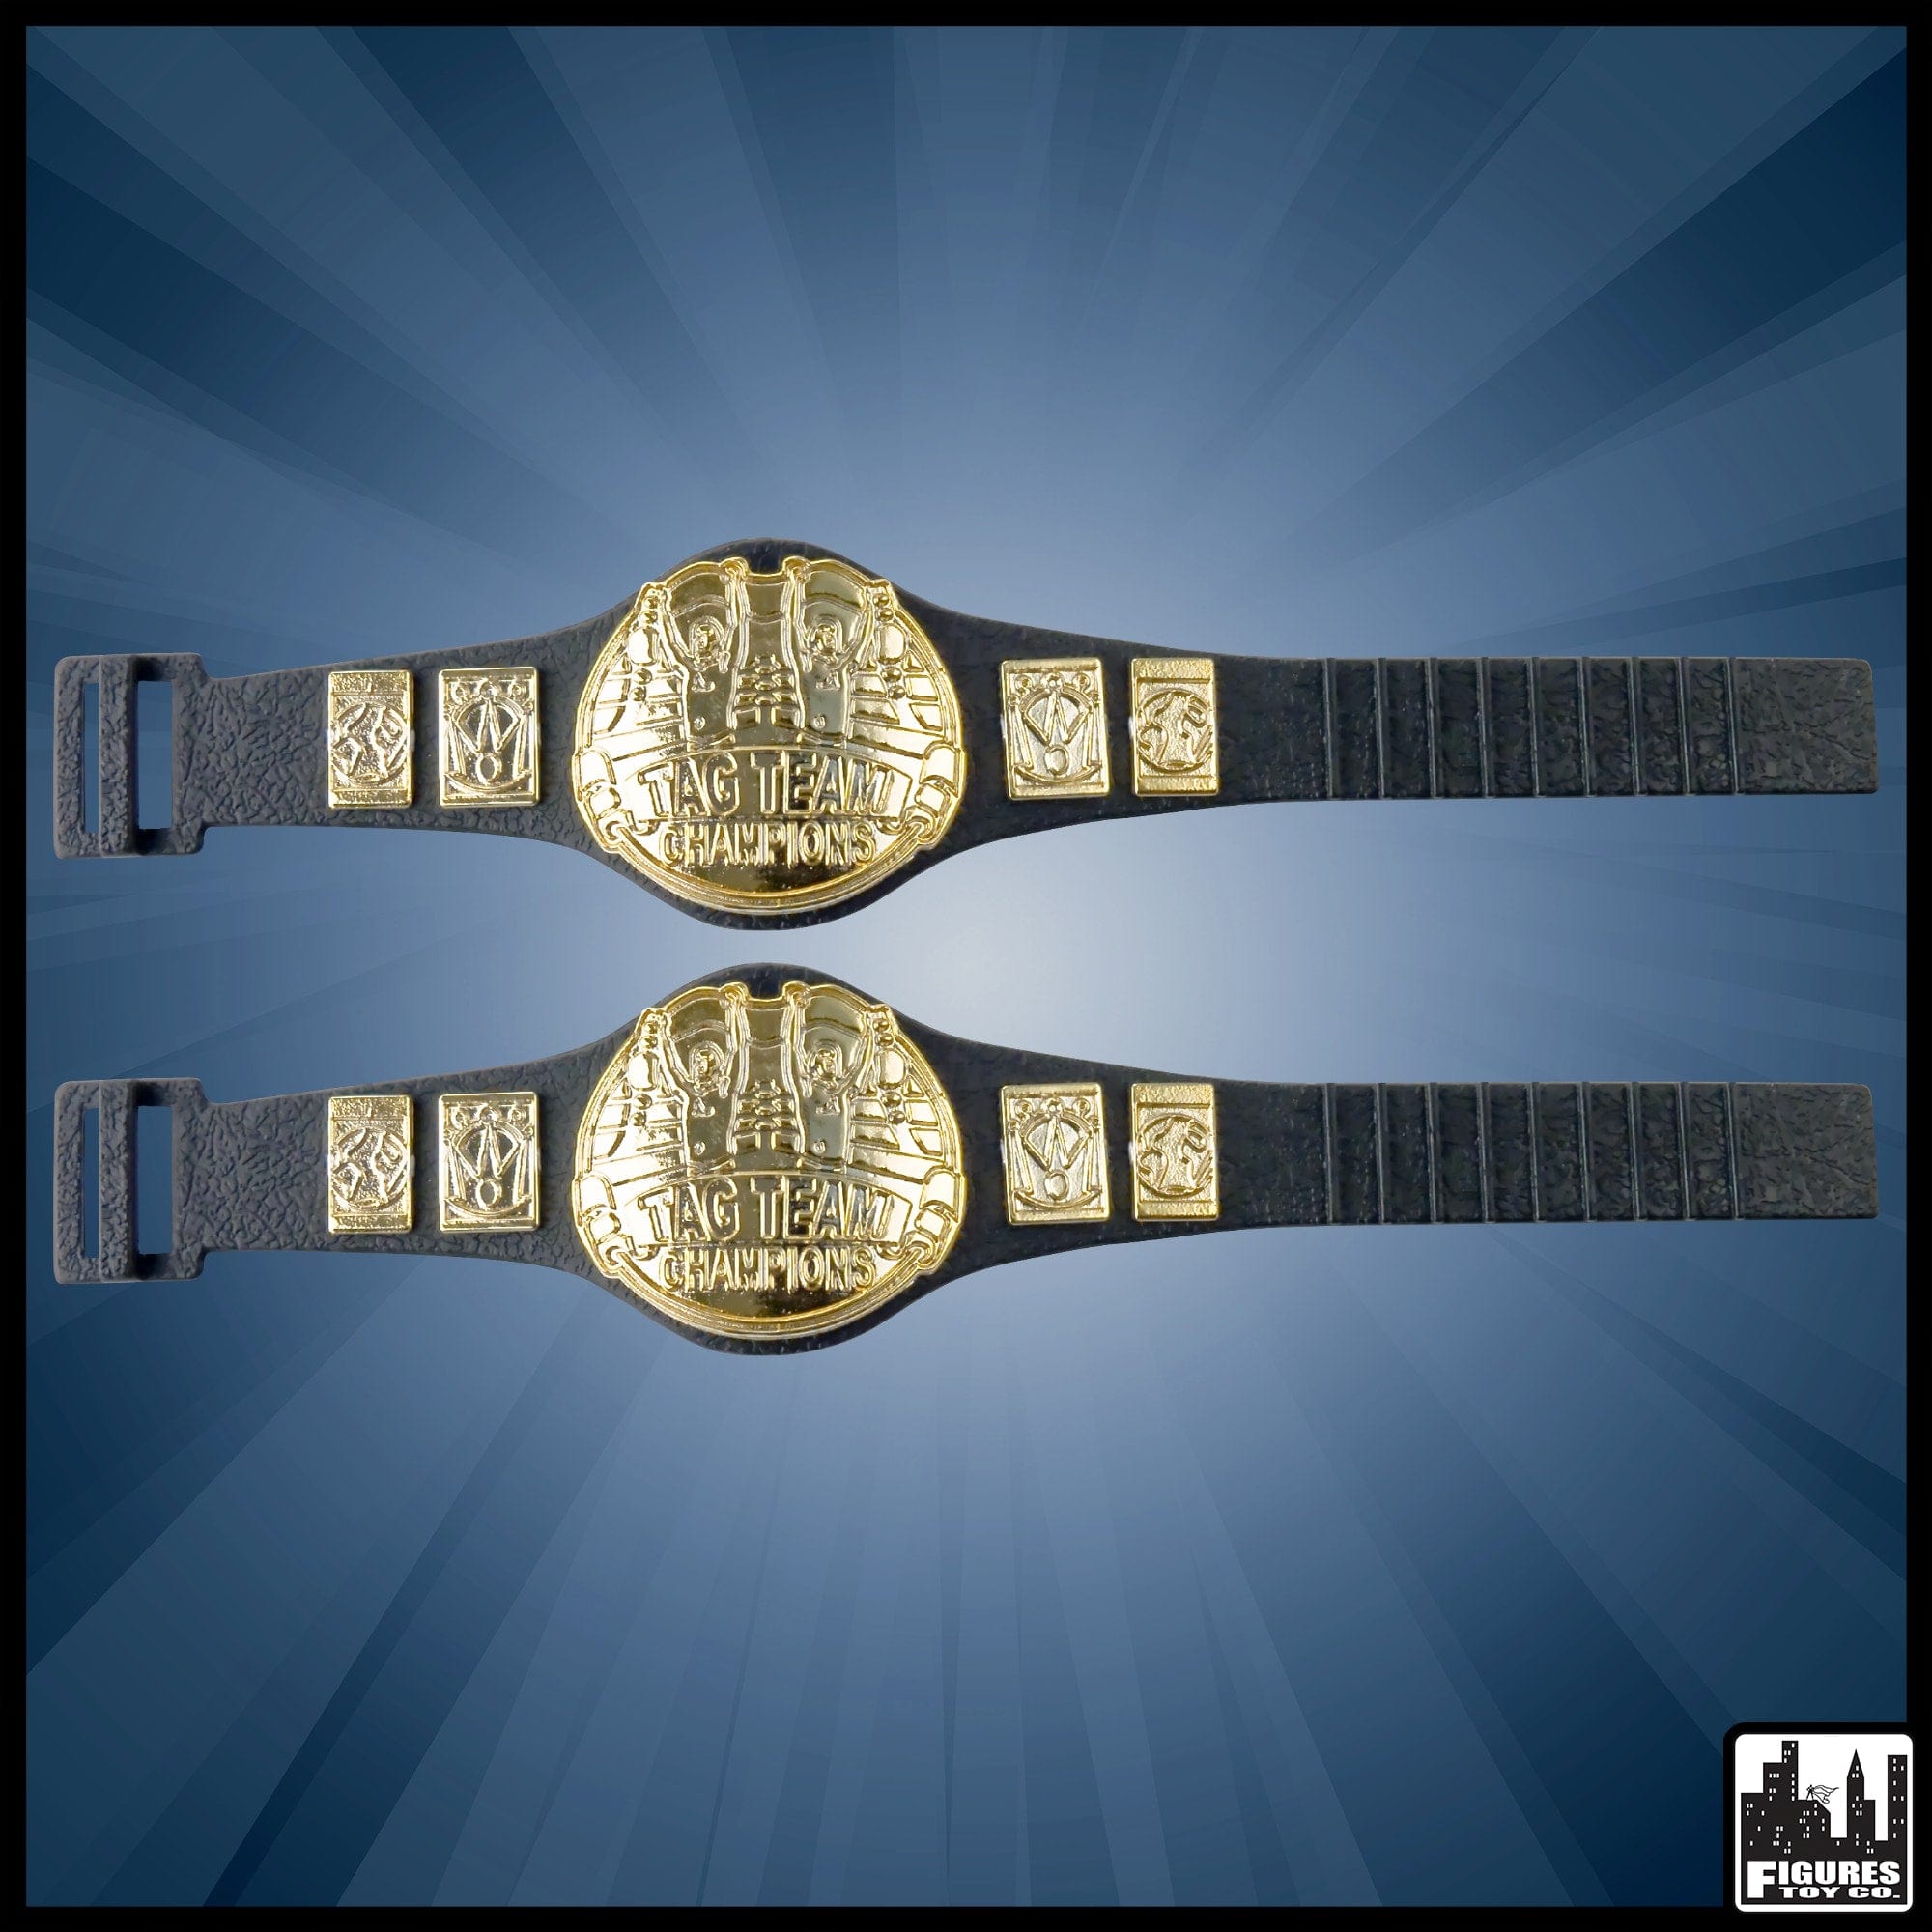 Set of 2 Tag Team Championship Belts for WWE Wrestling Action Figures